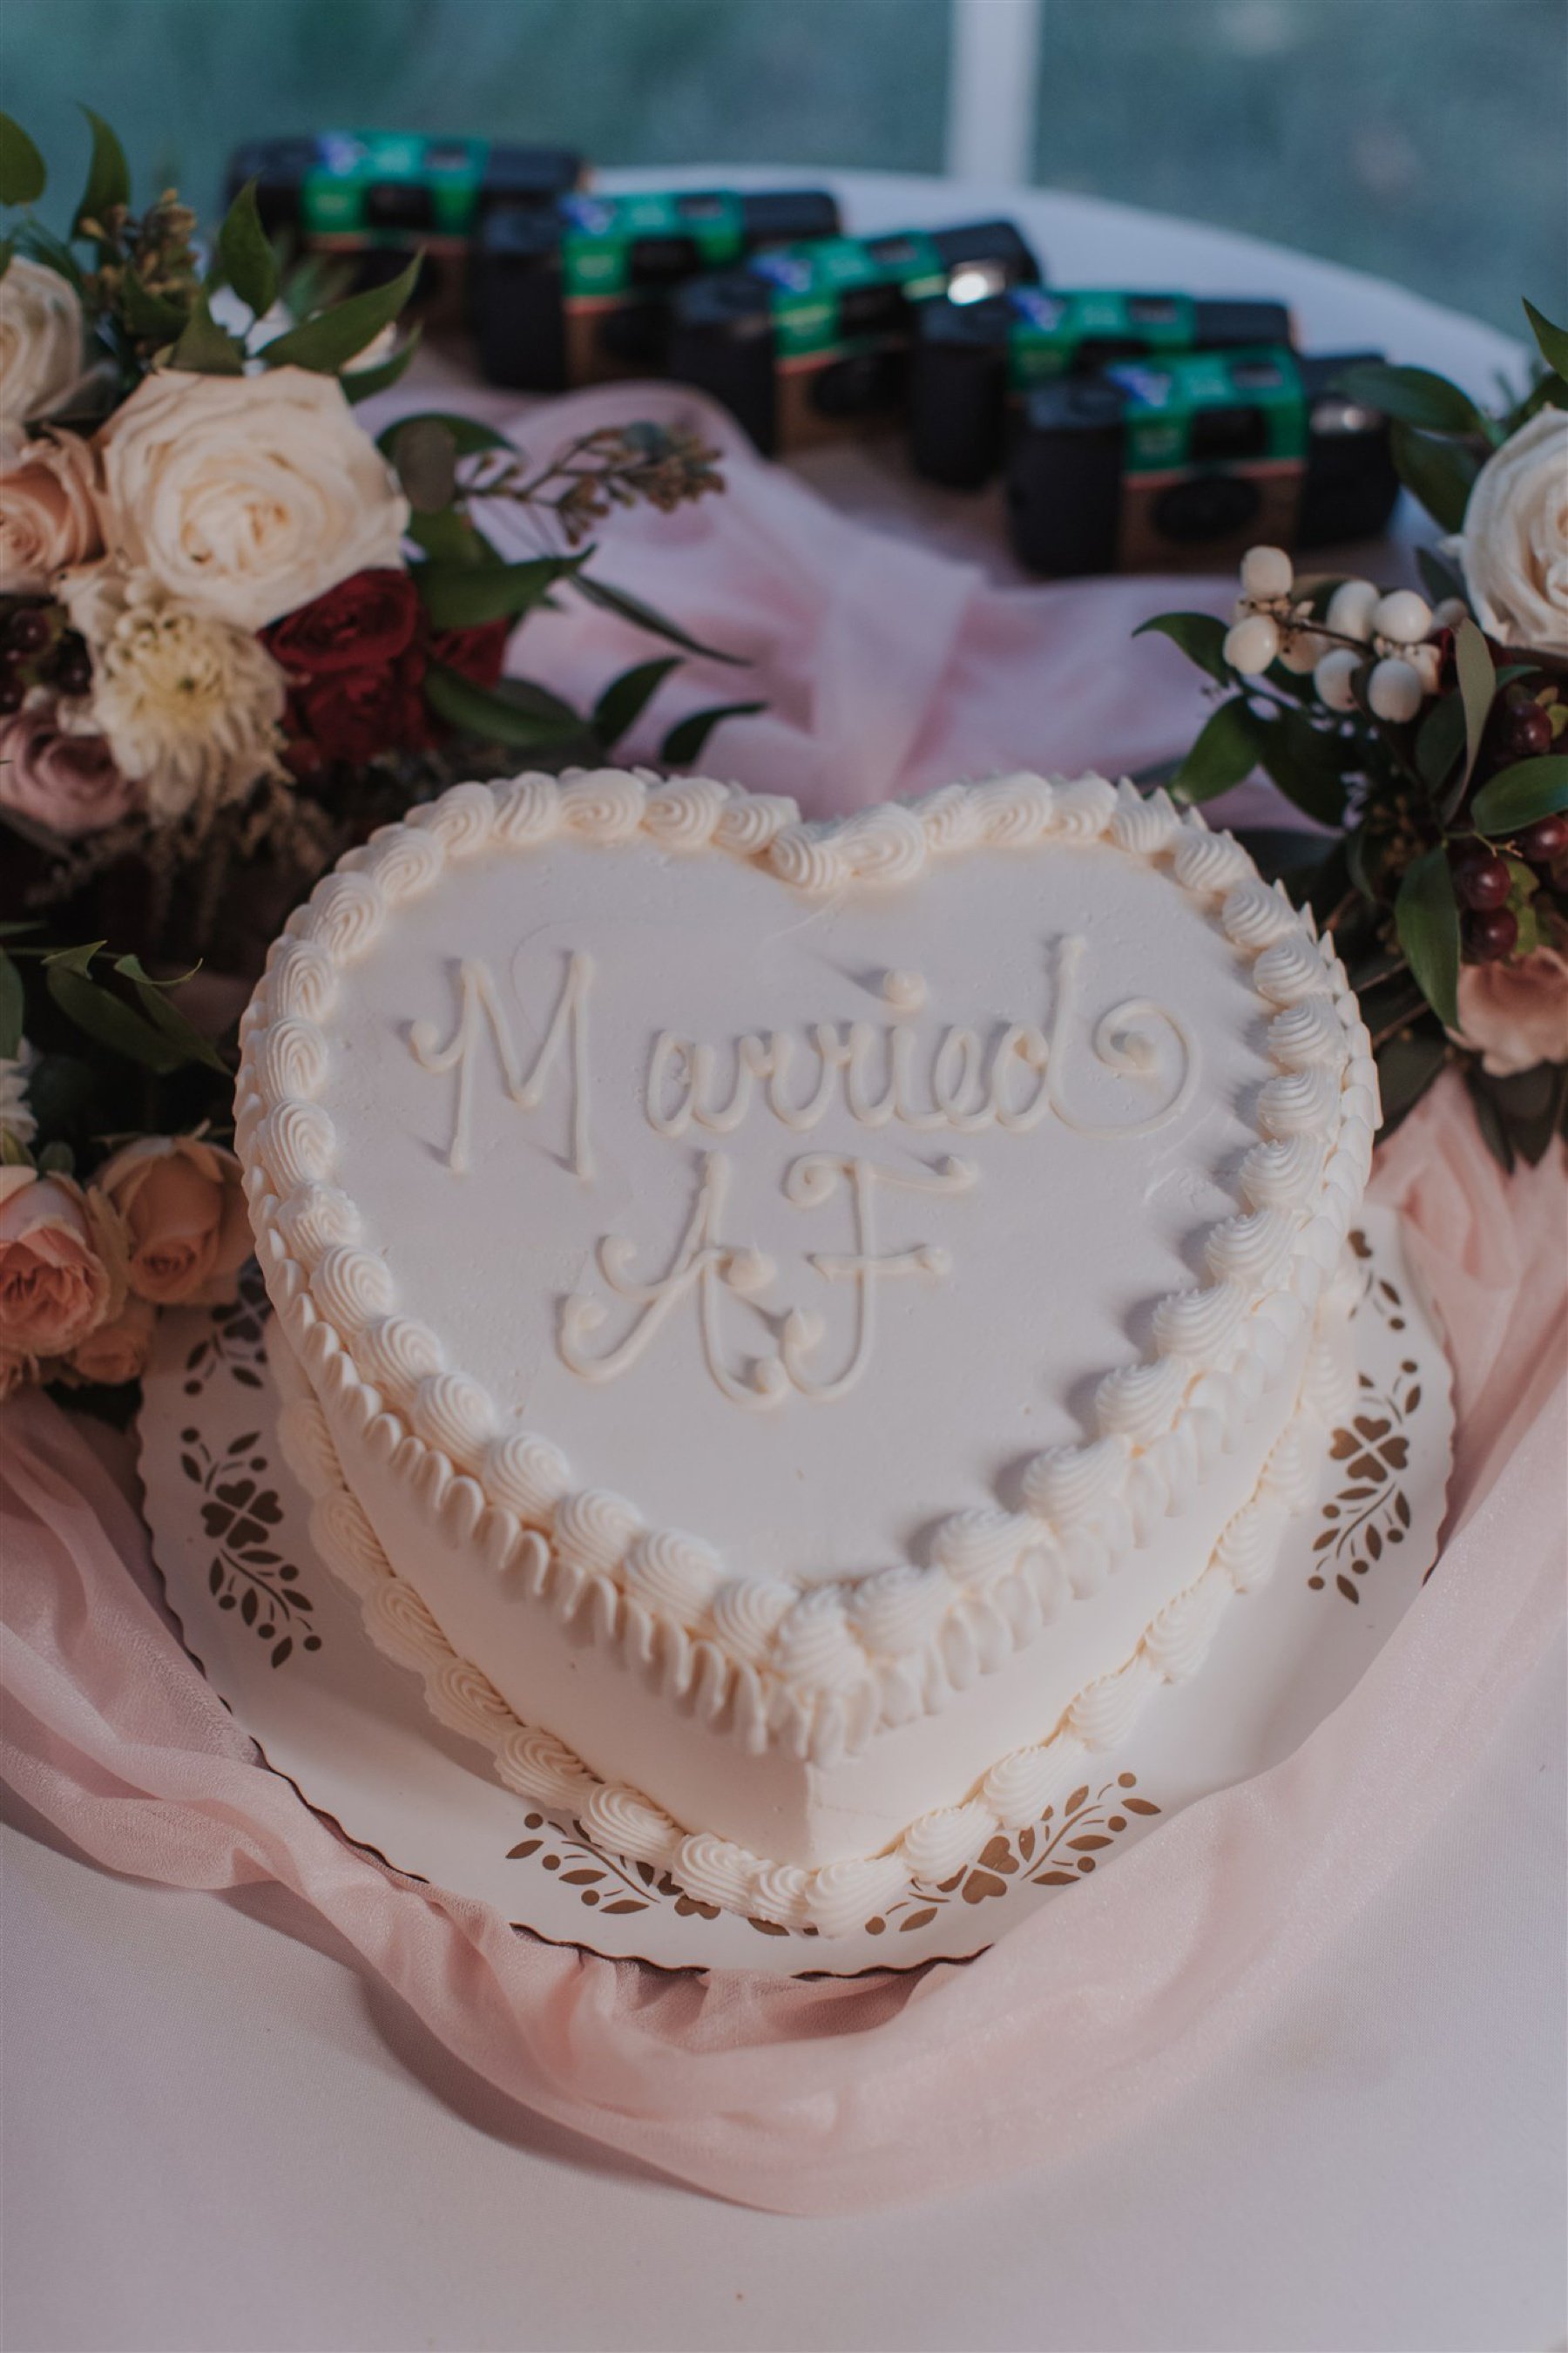 Married AF heart-shaped wedding cake